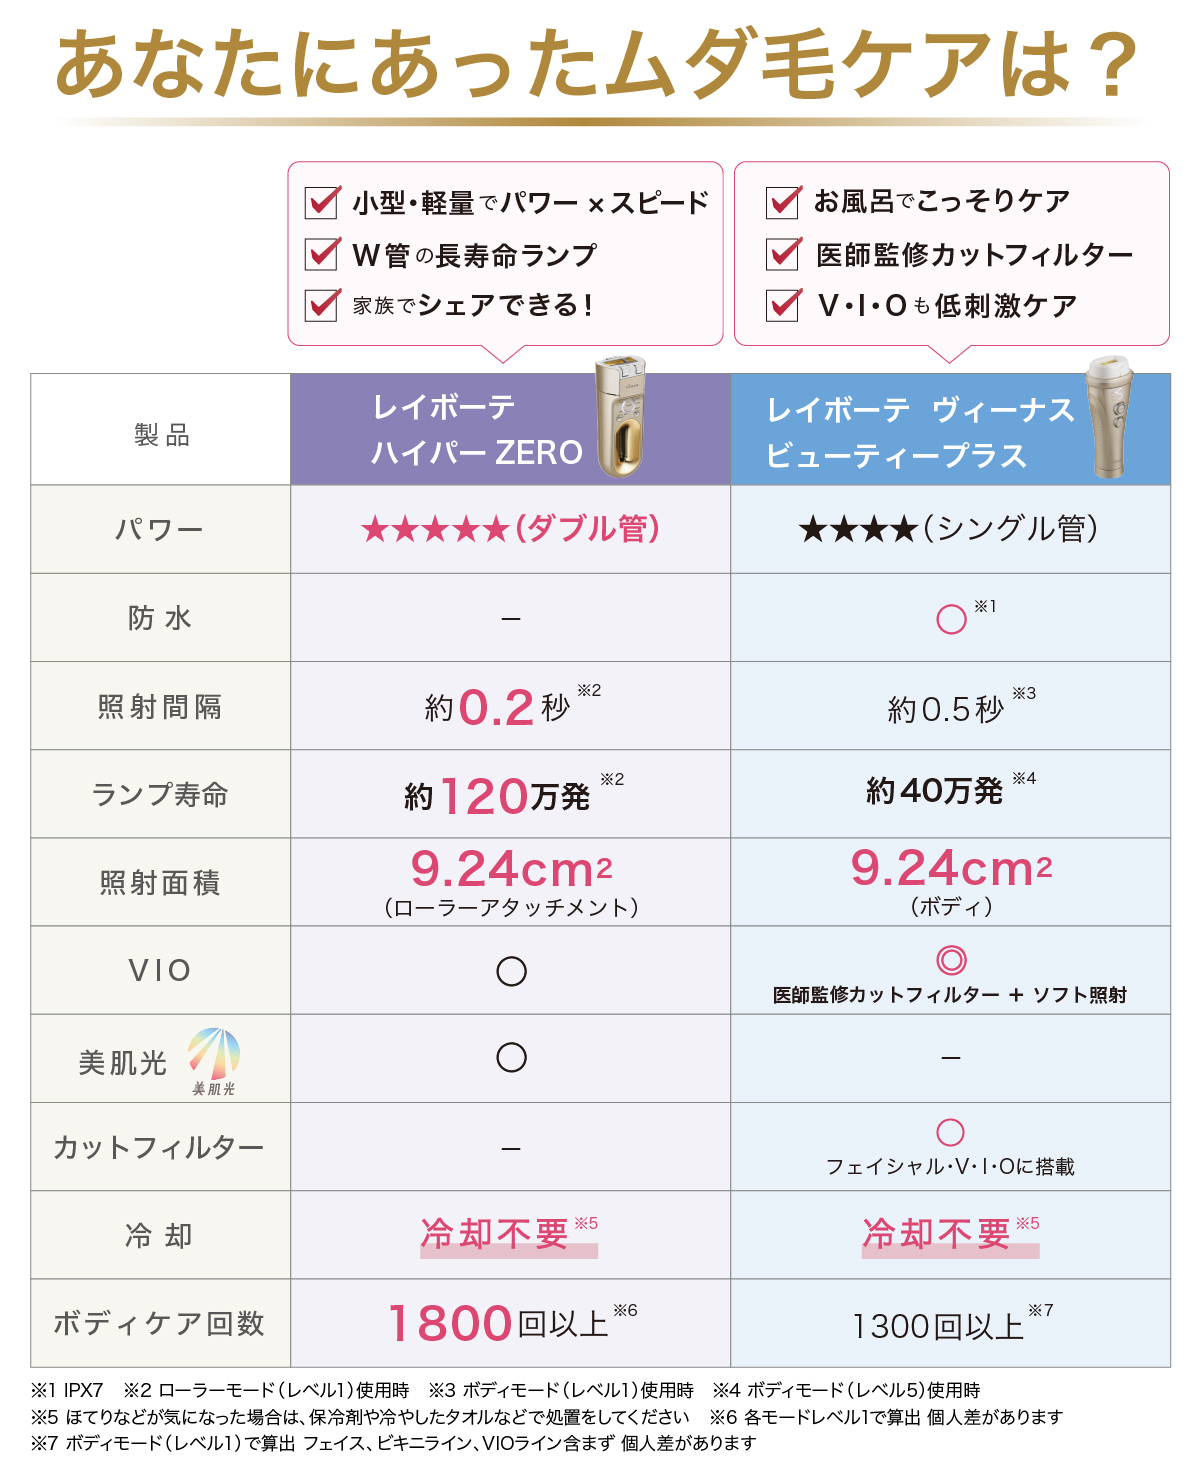 スペック比較表| 光美容器 | YA-MAN TOKYO JAPAN | ヤーマン株式会社